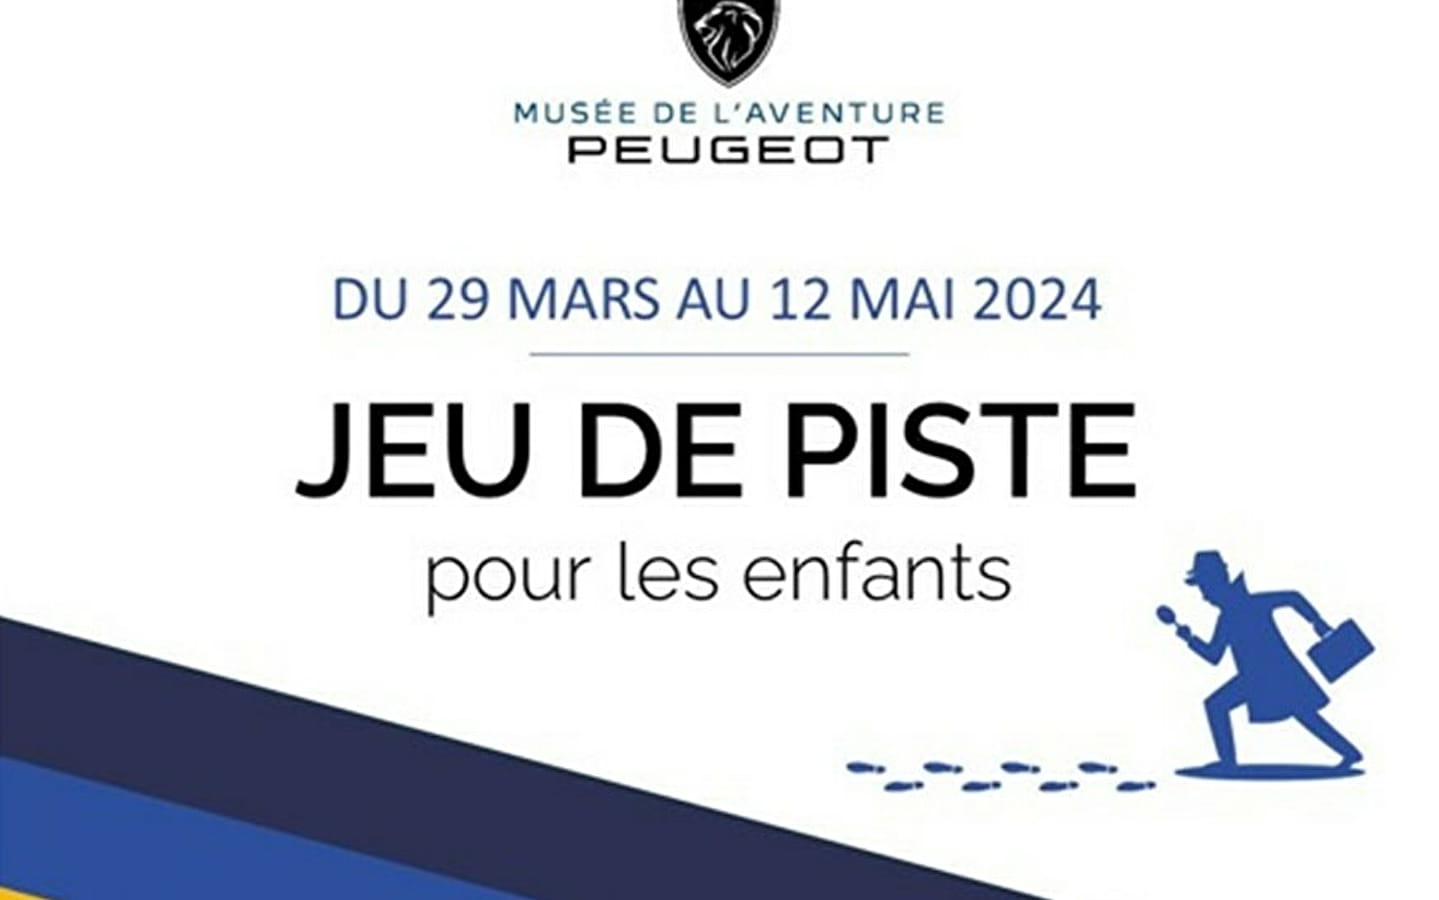 Schnitzeljagd: Musée de l'Aventure Peugeot (Museum des Peugeot-Abenteuers) 